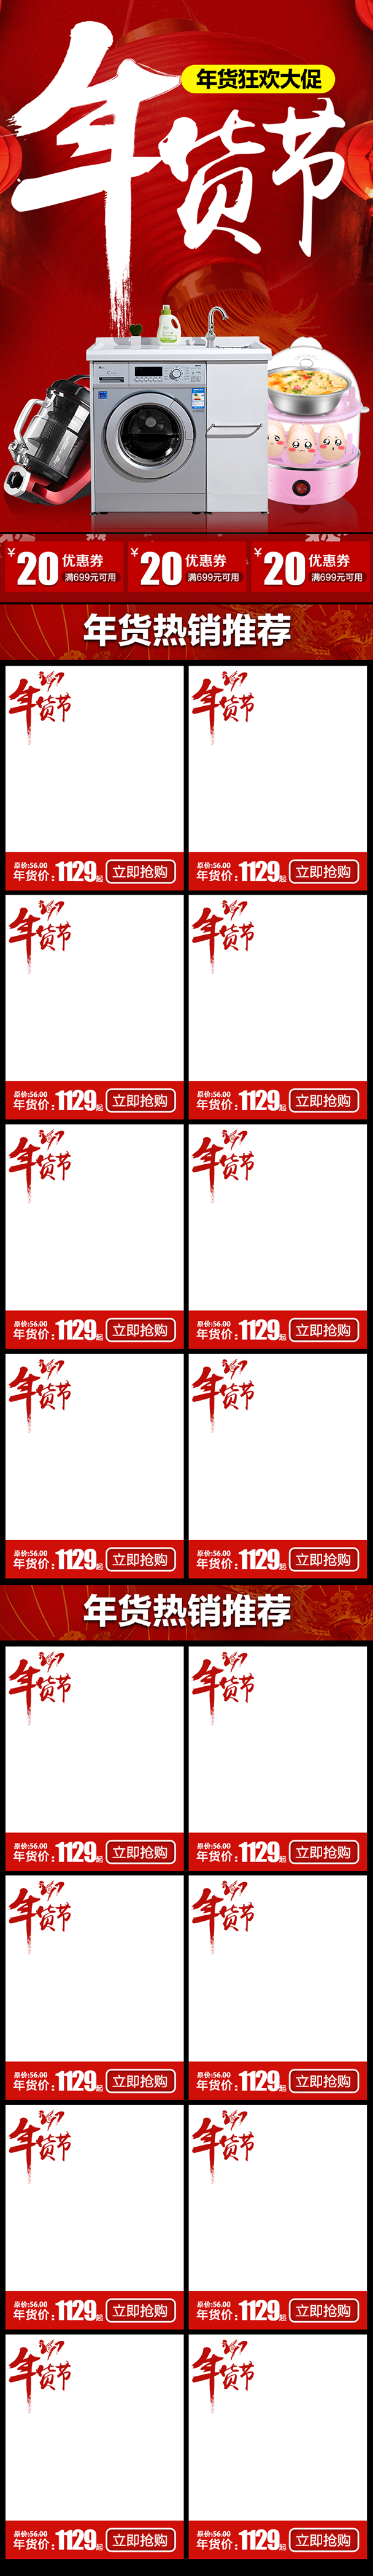 红色喜庆年货节电器手机端首页PSD模板